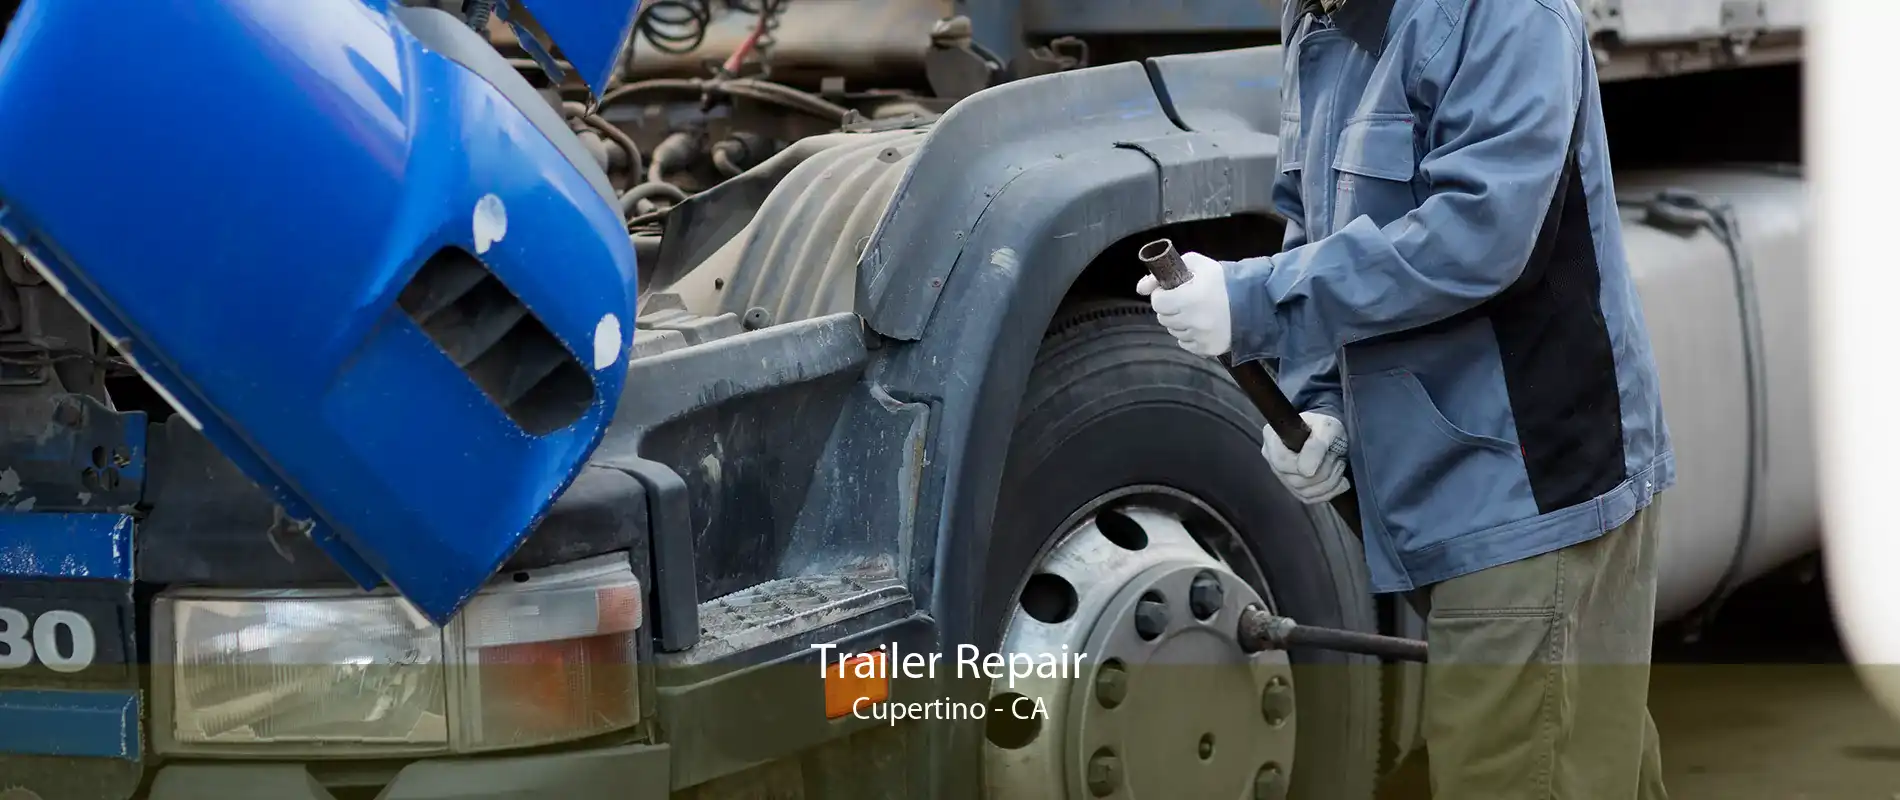 Trailer Repair Cupertino - CA